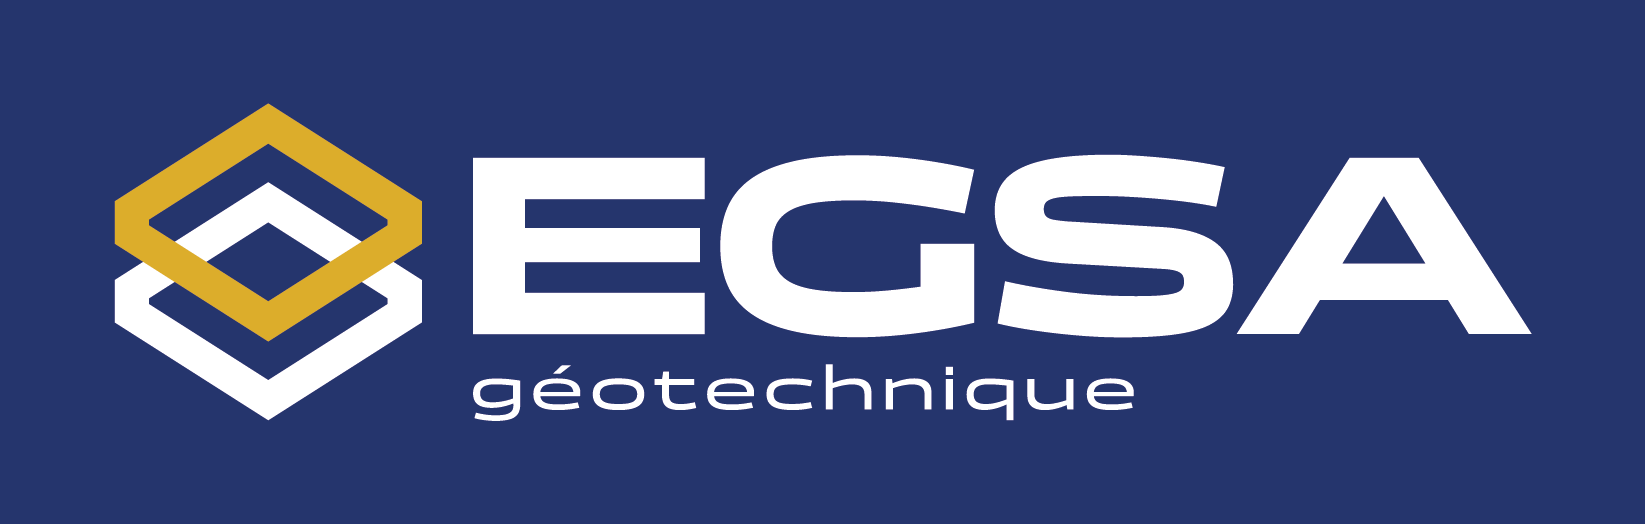 https://www.egsa.fr/media/site/a113c8dd36-1714414269/logo-egsa.png